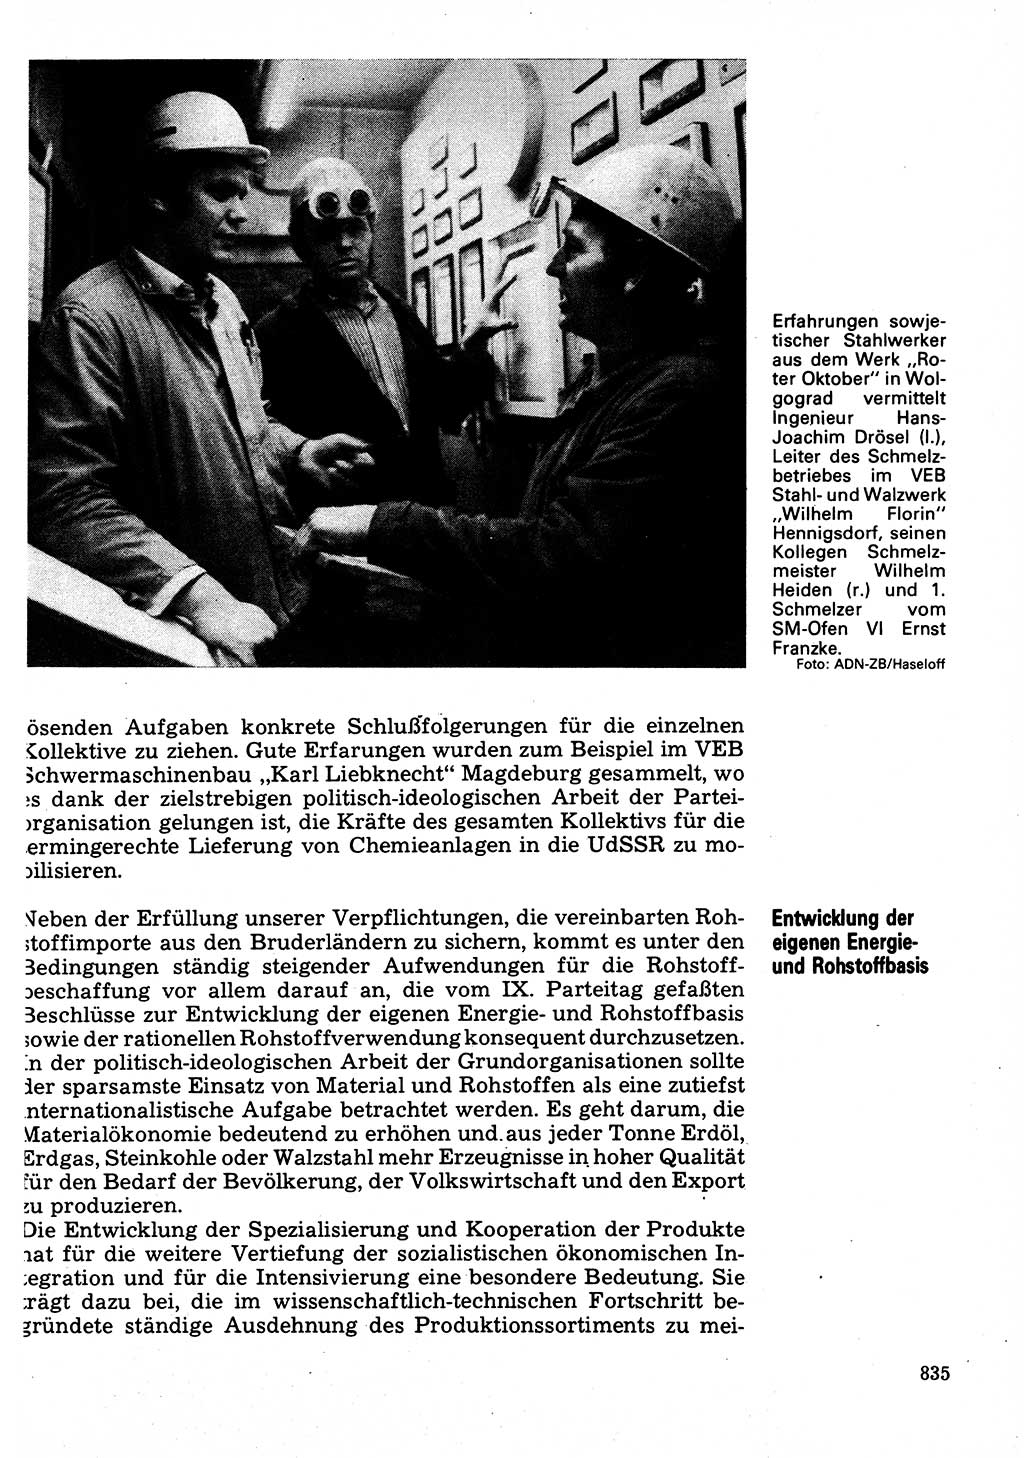 Neuer Weg (NW), Organ des Zentralkomitees (ZK) der SED (Sozialistische Einheitspartei Deutschlands) für Fragen des Parteilebens, 32. Jahrgang [Deutsche Demokratische Republik (DDR)] 1977, Seite 835 (NW ZK SED DDR 1977, S. 835)